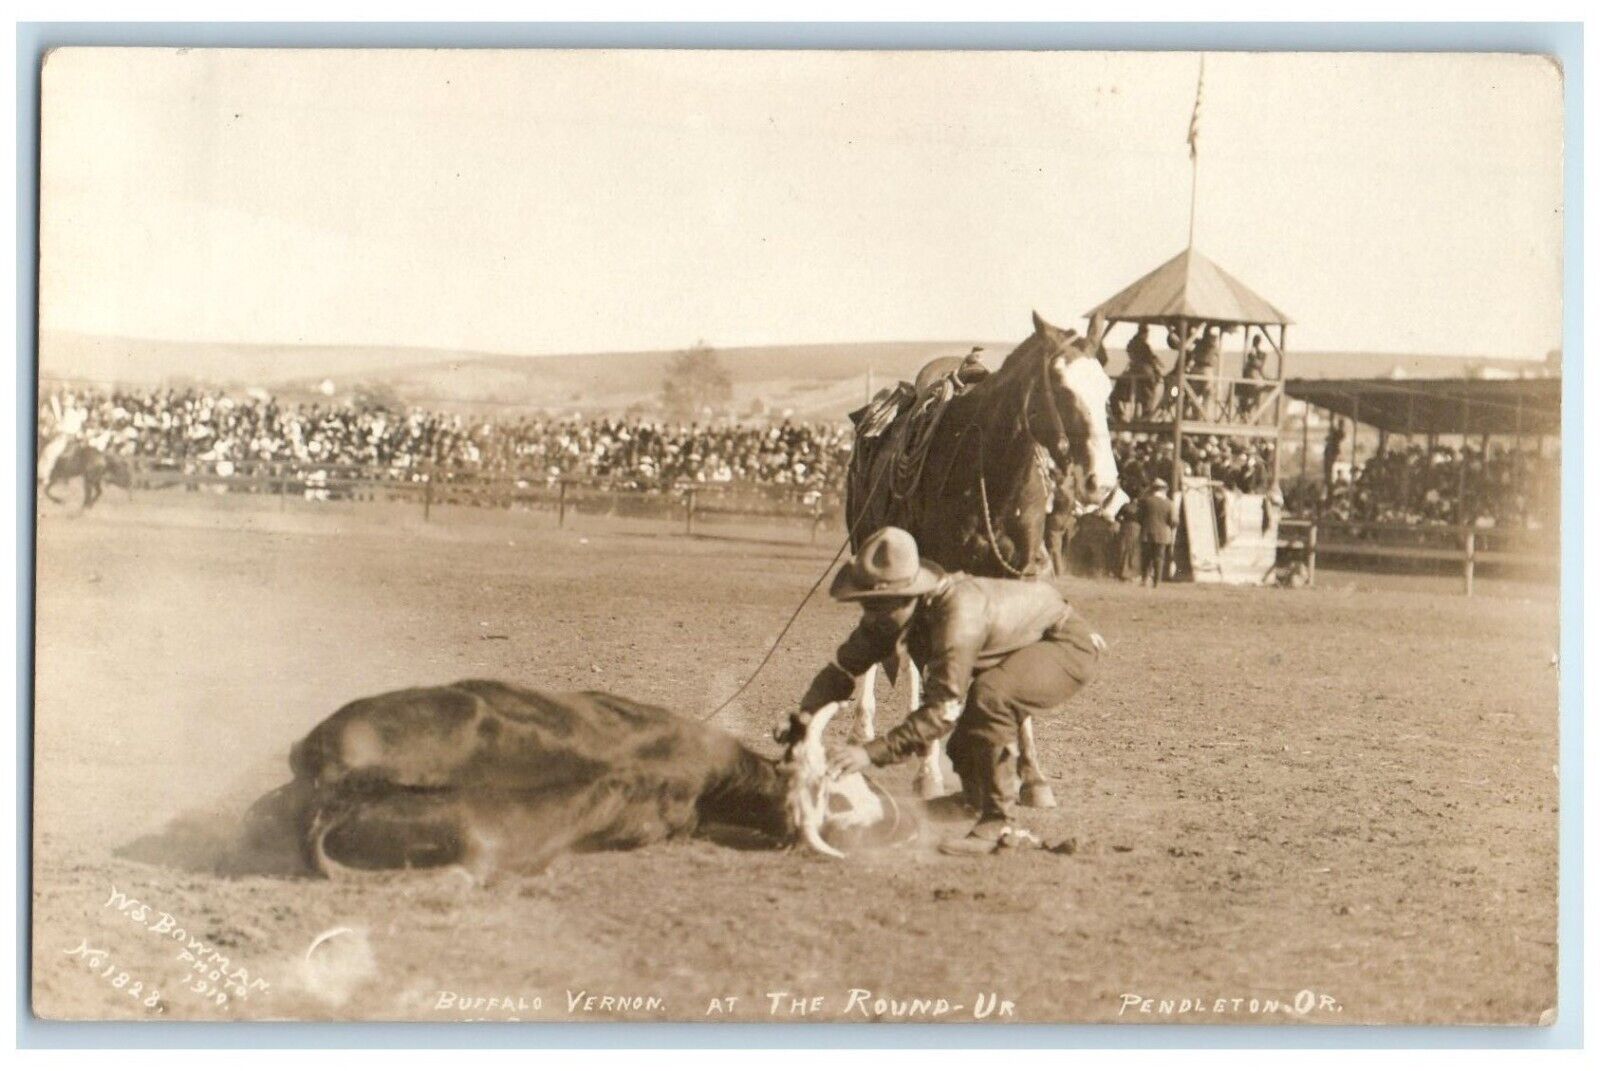 c1910's Buffalo Vernon At The Round Up Pendleton Oregon OR  RPPC Photo Postcard